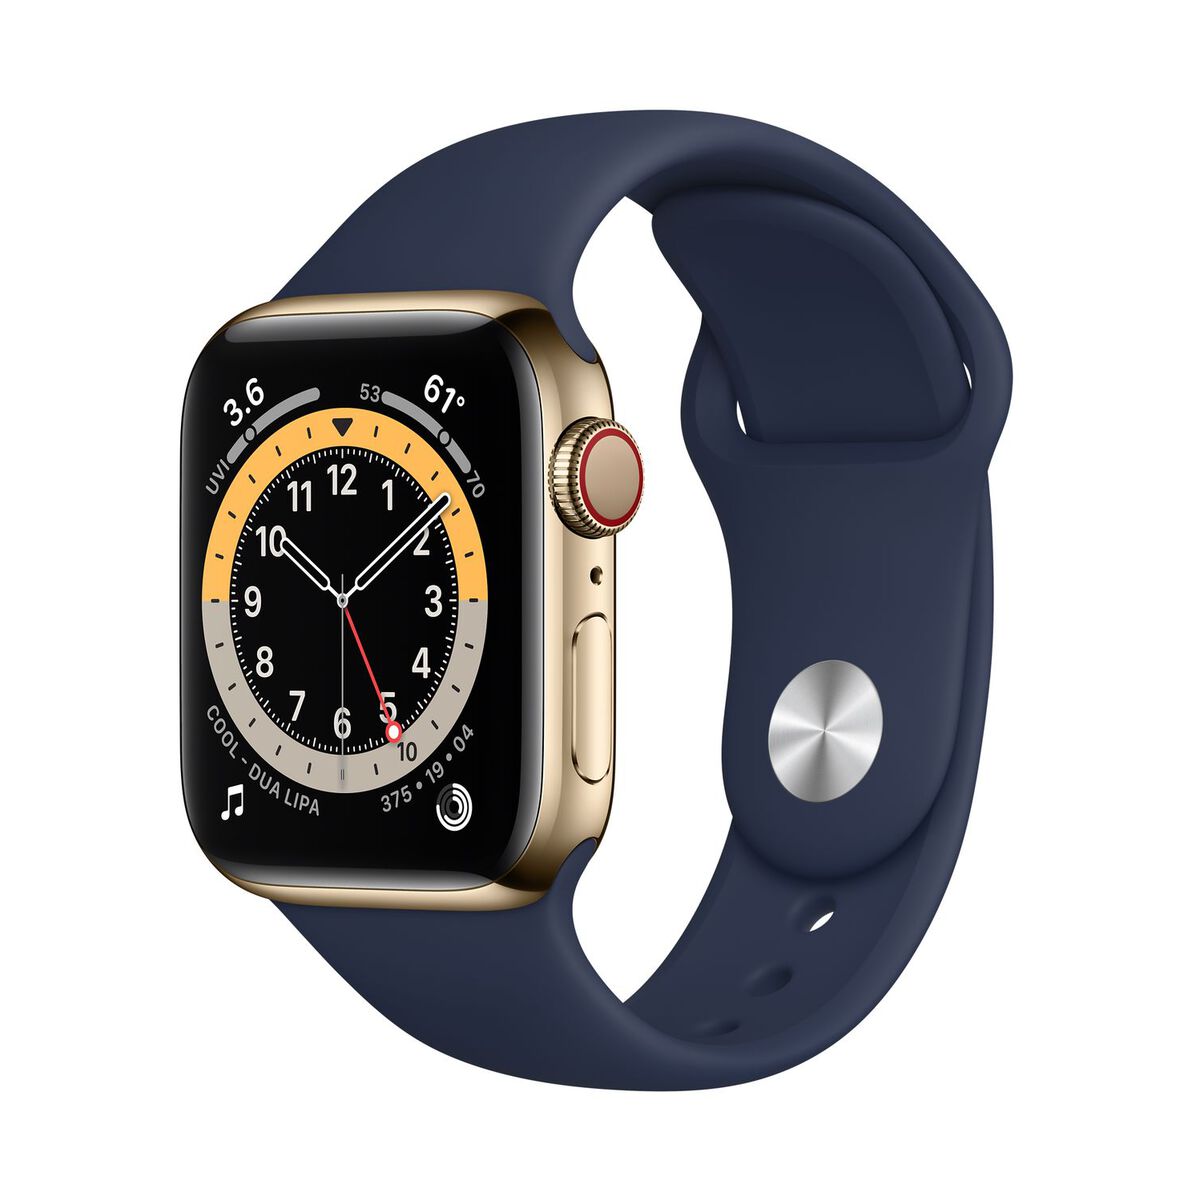 Smartwatch apple watch series 6 gps + cellular 40mm 4g carcasa gold stainless steel bratara deep navy sport band